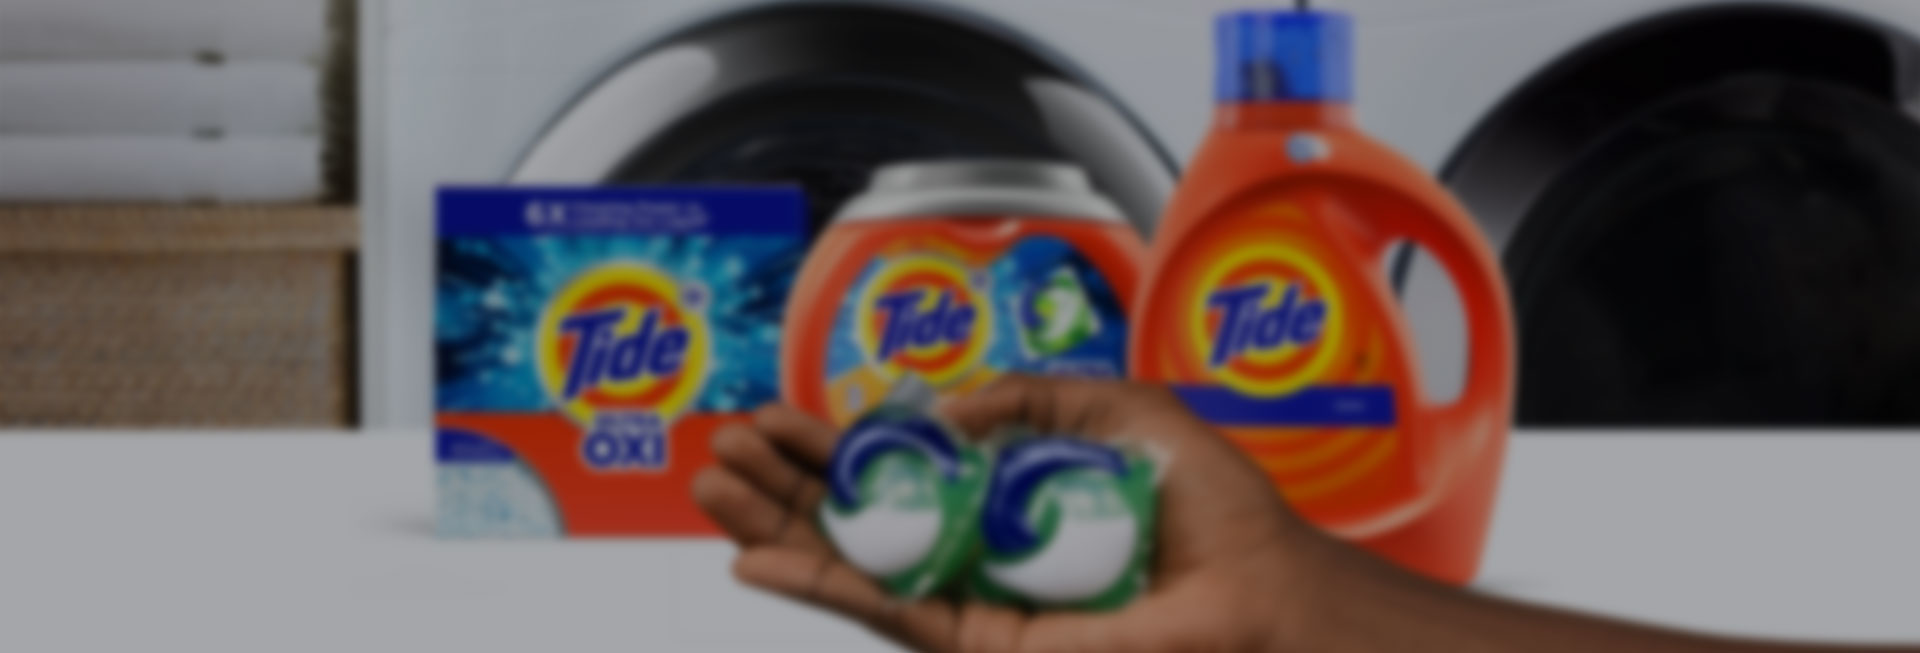 Procter & Gamble crée une marque de lessive écologique pour le